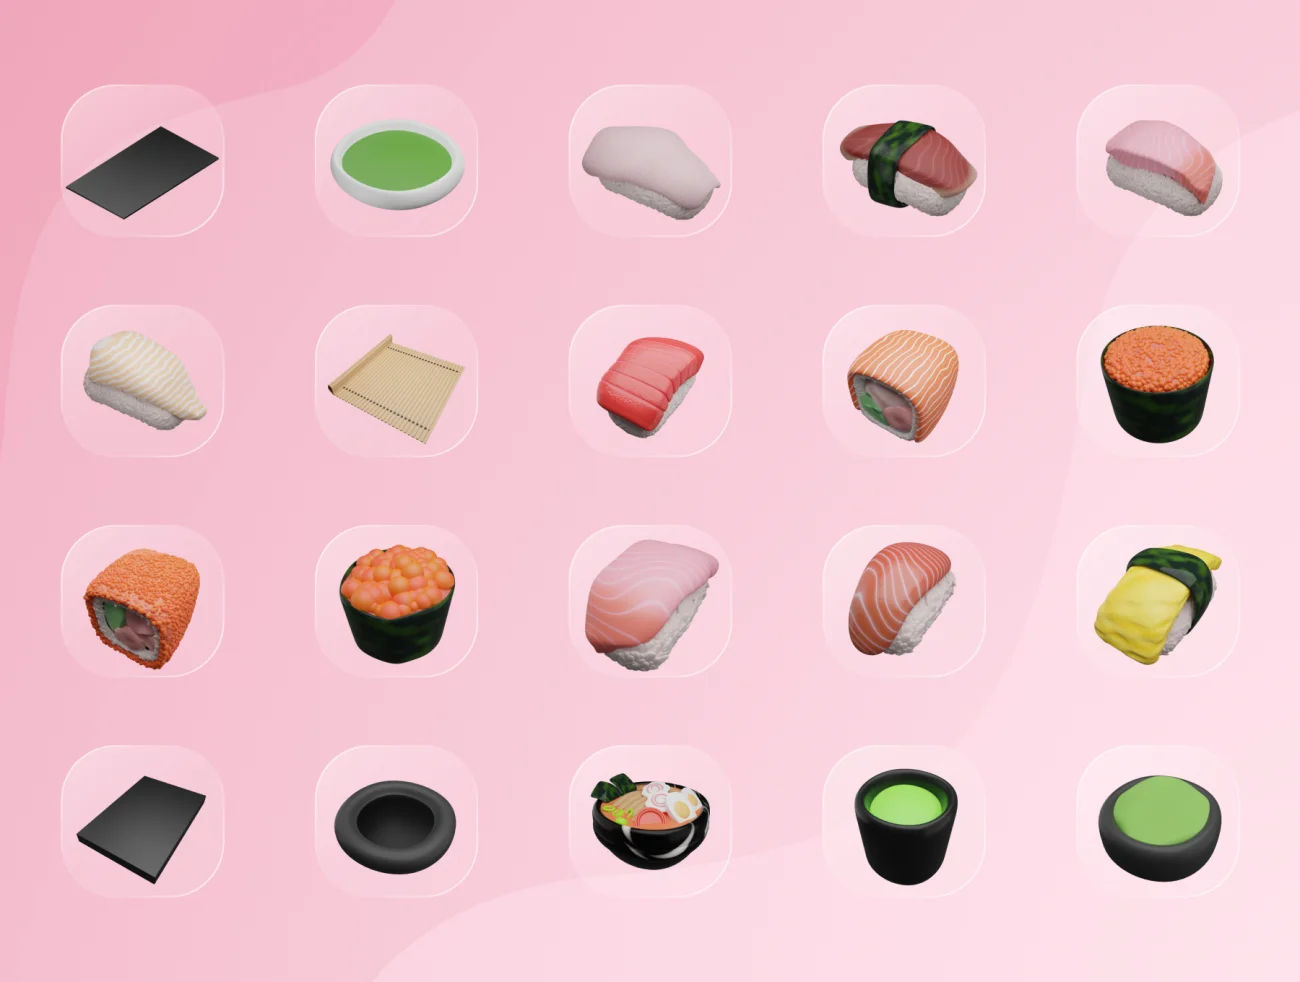 40款日本美食寿司3D图标模型素材 3D Japanese Food Illustration .blender-3D/图标-到位啦UI